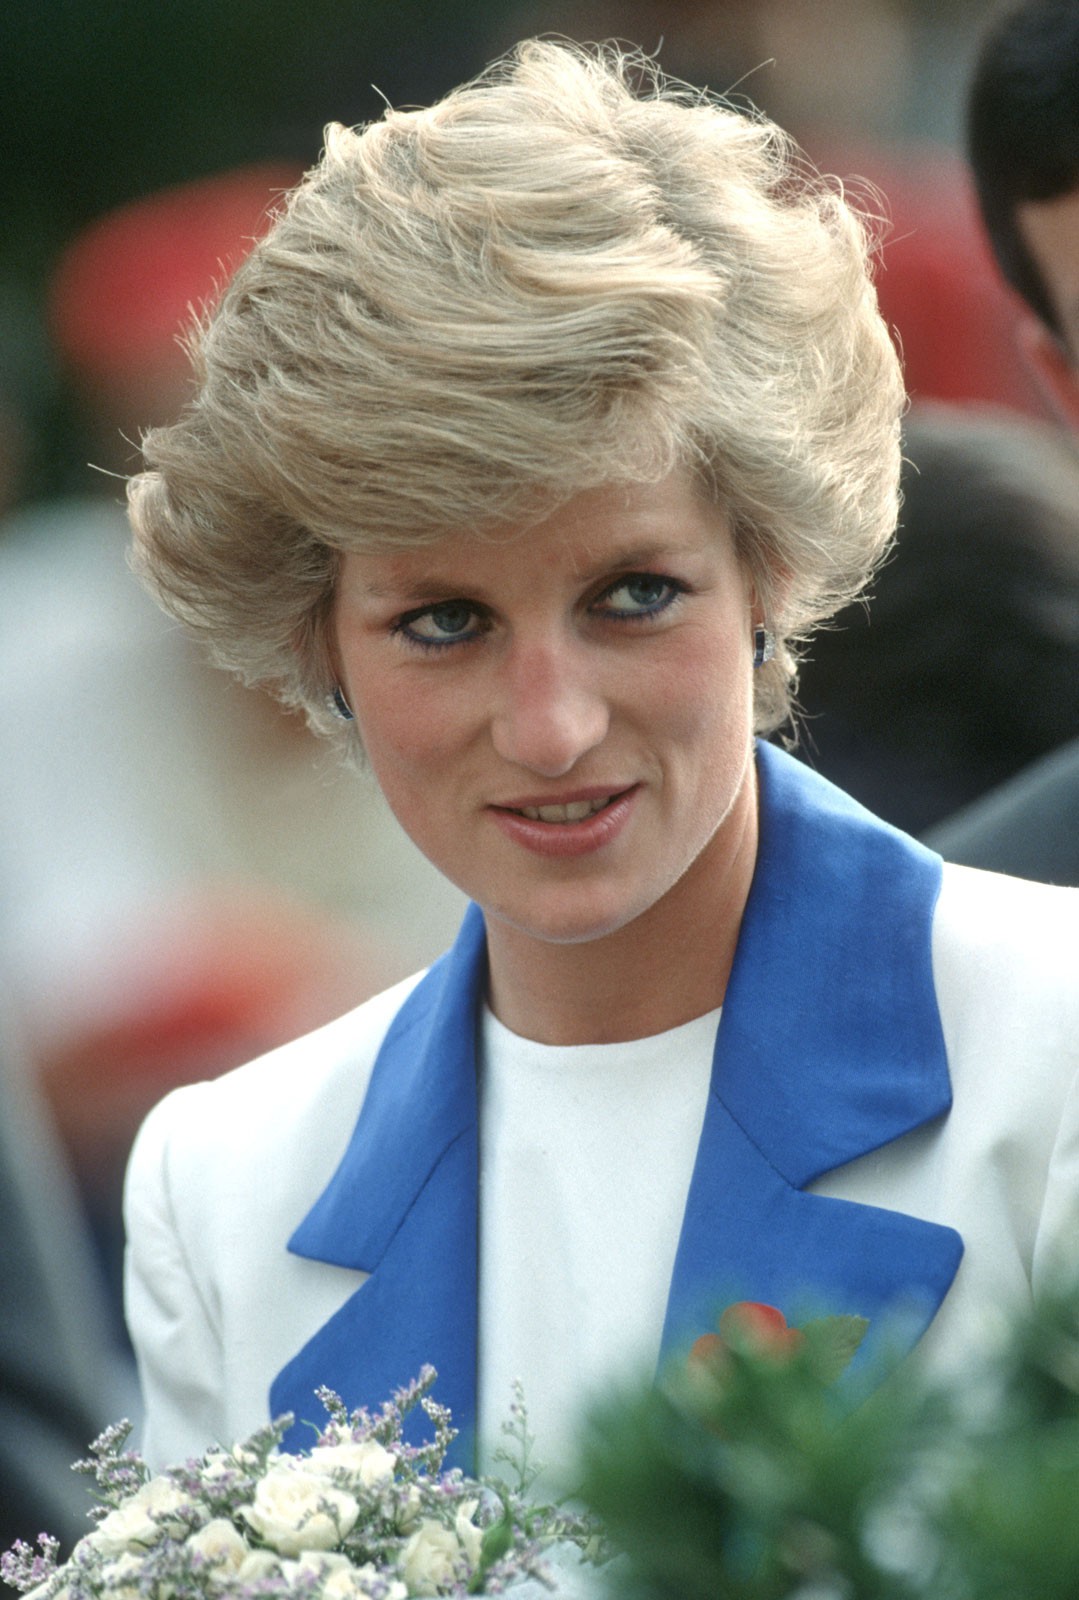 Bí mật đằng sau mái tóc ngắn hoàn hảo của của Công nương Diana sẽ khiến bạn càng ngưỡng mộ sự kín đáo của bà - Ảnh 1.